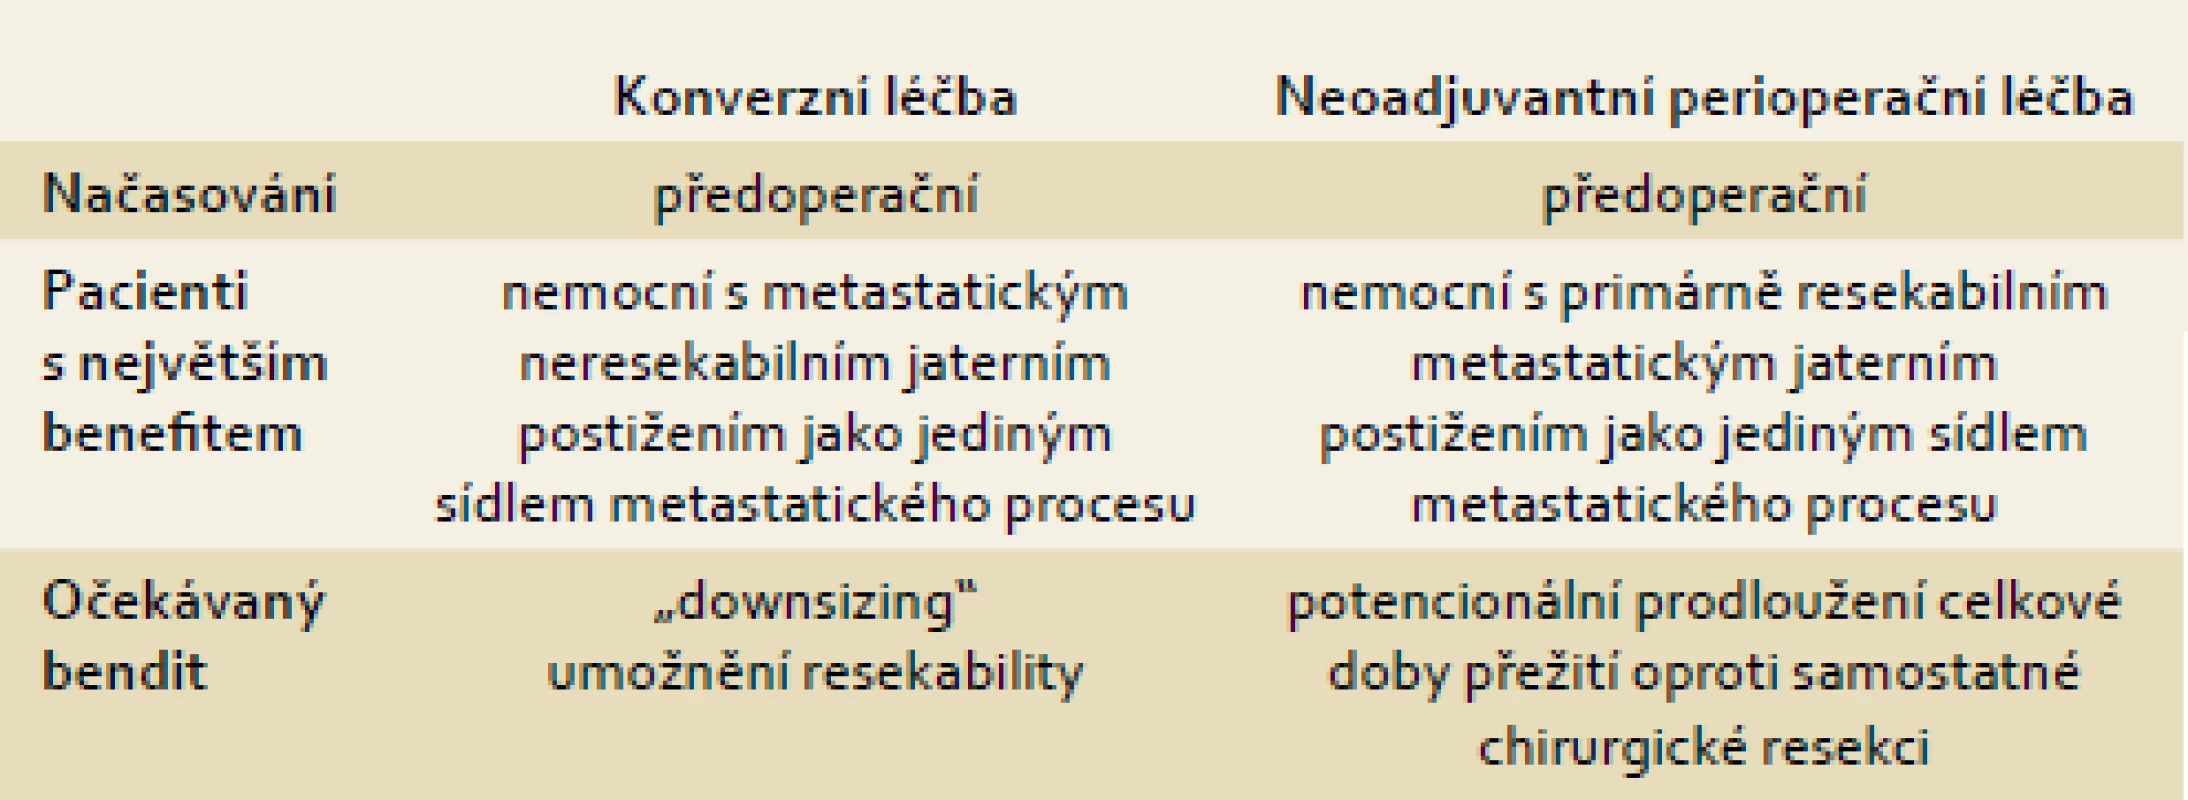 Porovnání konverzní a perioperační léčby.
Tab. 1. Comparison of conversion and perioperative treatment.